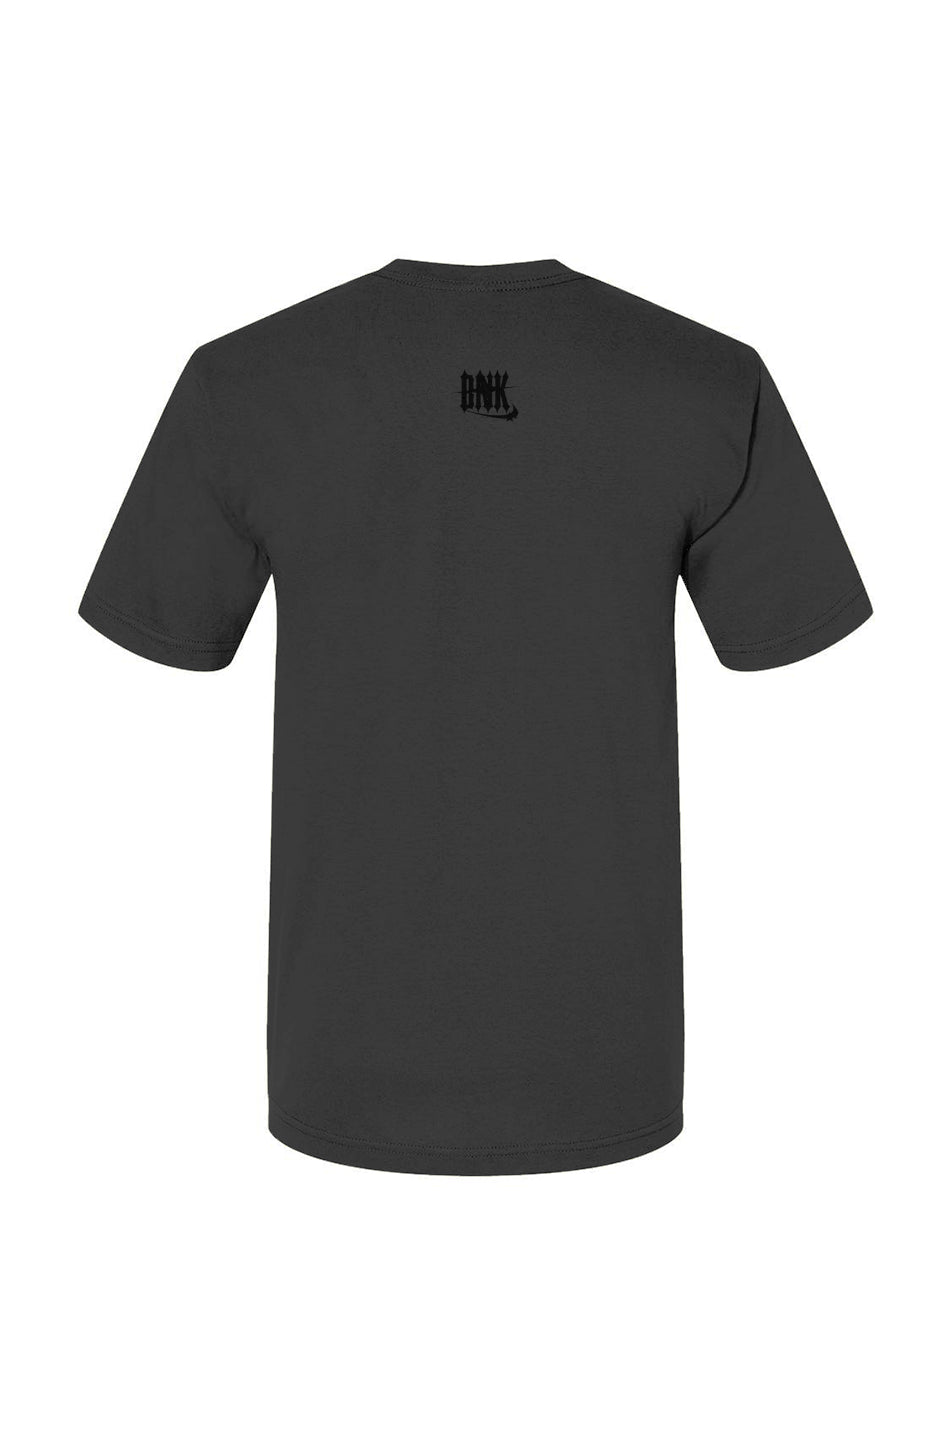 Fetti/Bnk USA-Made 100% Cotton T-Shirt